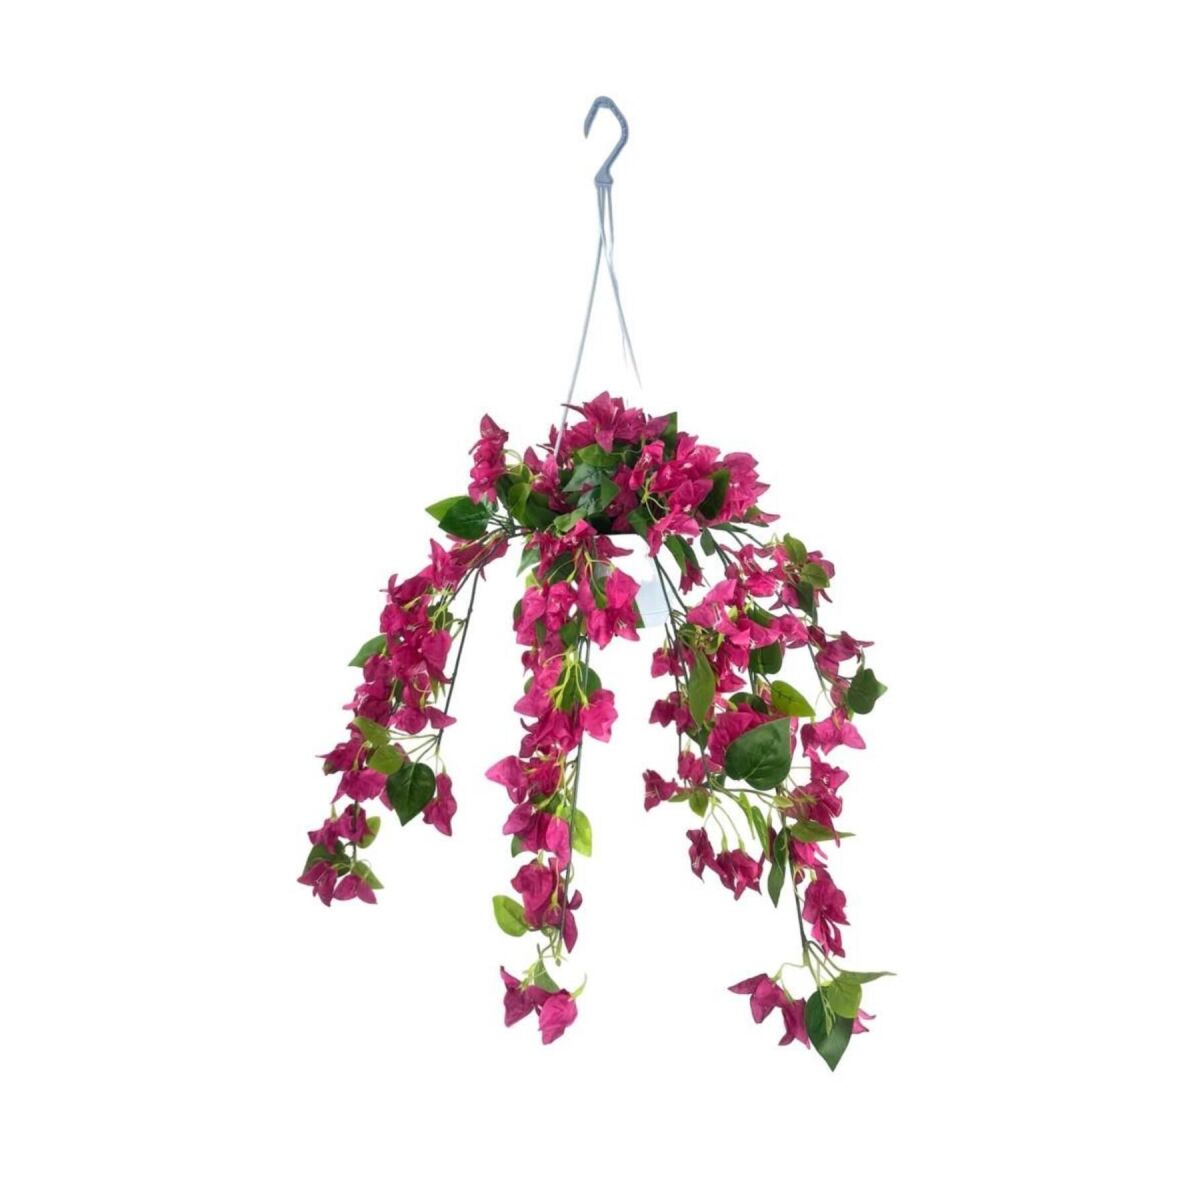 Yapay Çiçek Begonvil Fuşya Pembe Sarkaç Askılı Saksıda Balkon Çiçeği Çiçek Sepeti